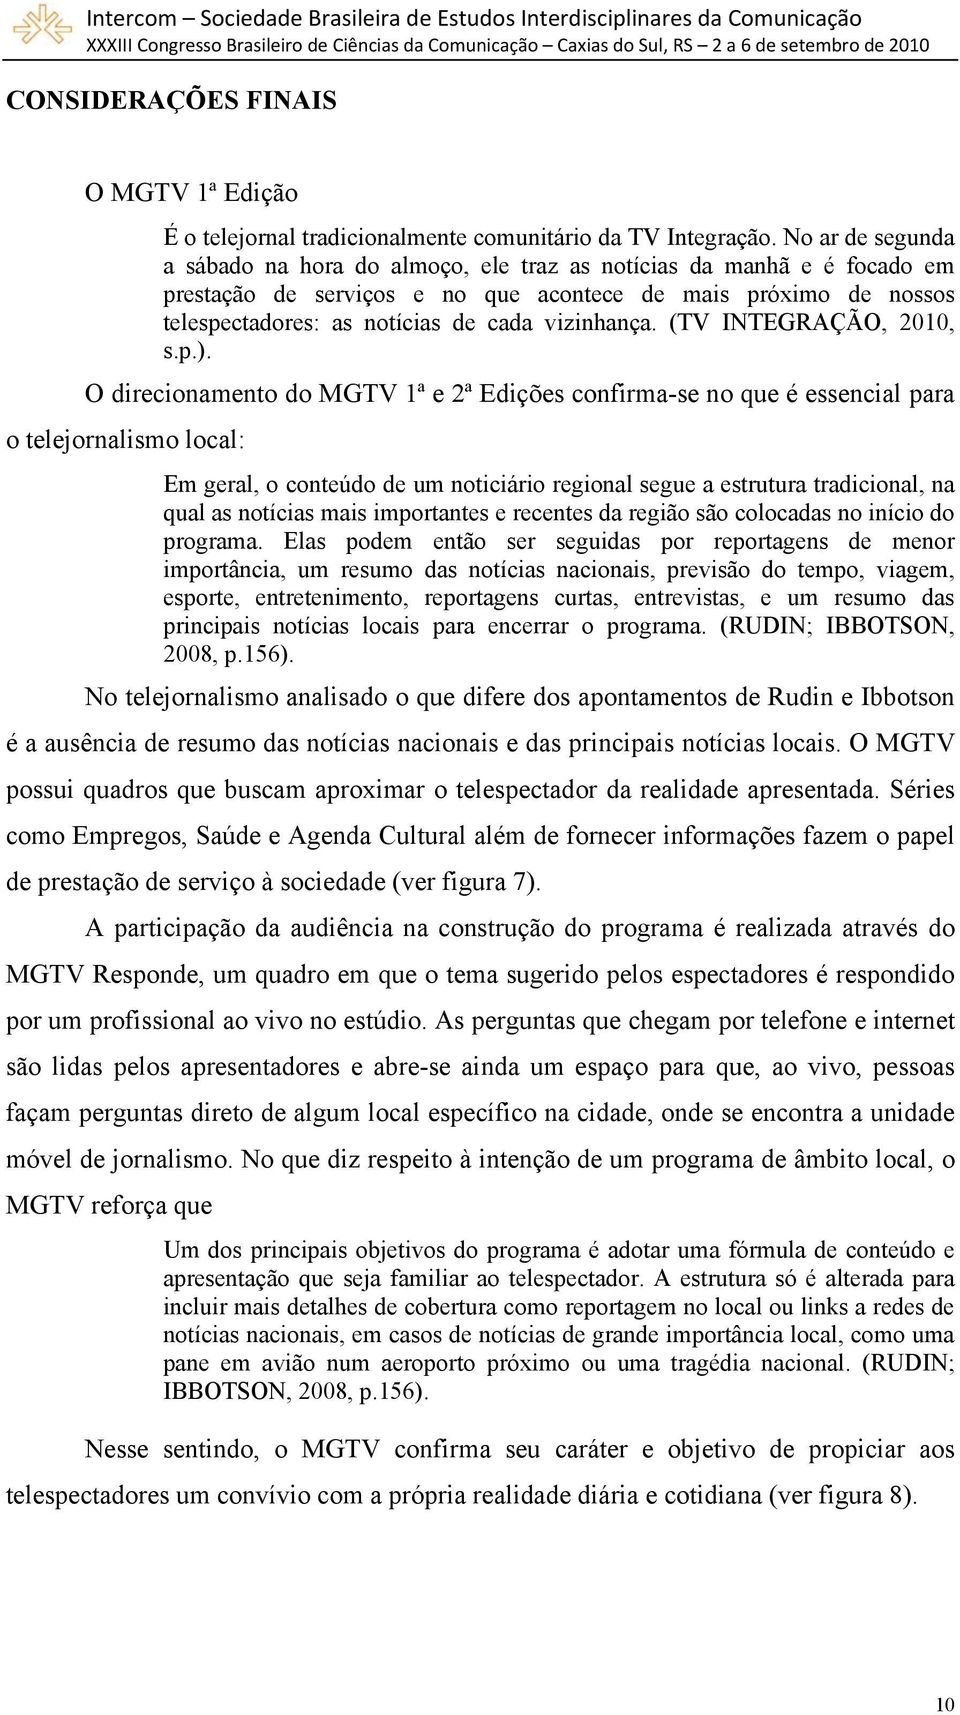 vizinhança. (TV INTEGRAÇÃO, 2010, s.p.).